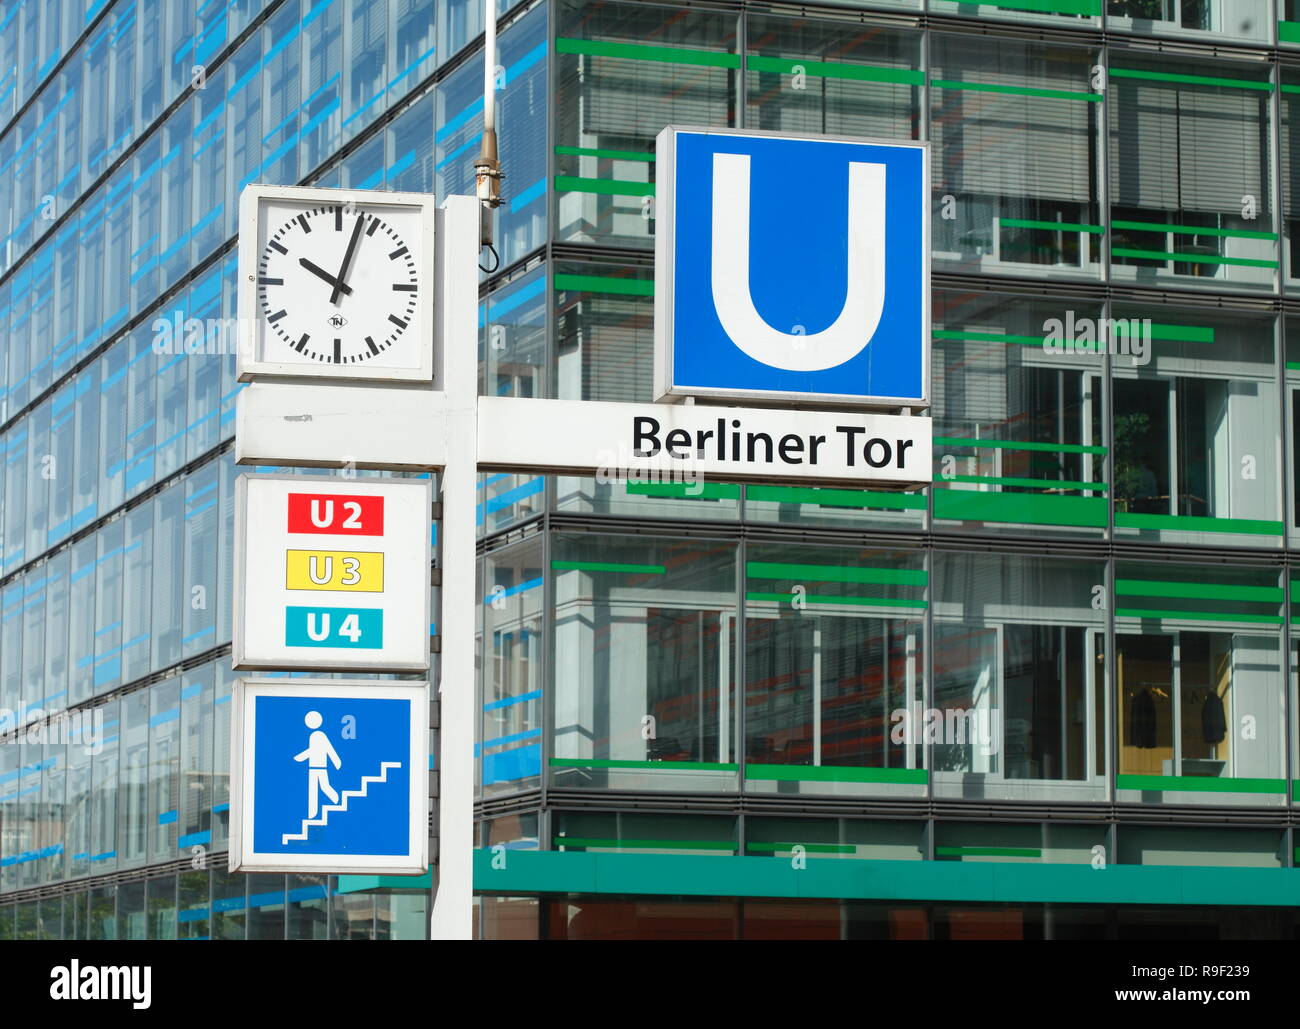 Pittogramma fermata della metropolitana di Berliner Tor, Amburgo, Germania, Europa mi Pictogramm U-Bahn Haltestelle Berliner Tor, Amburgo, Deutschland, Europa ho Foto Stock